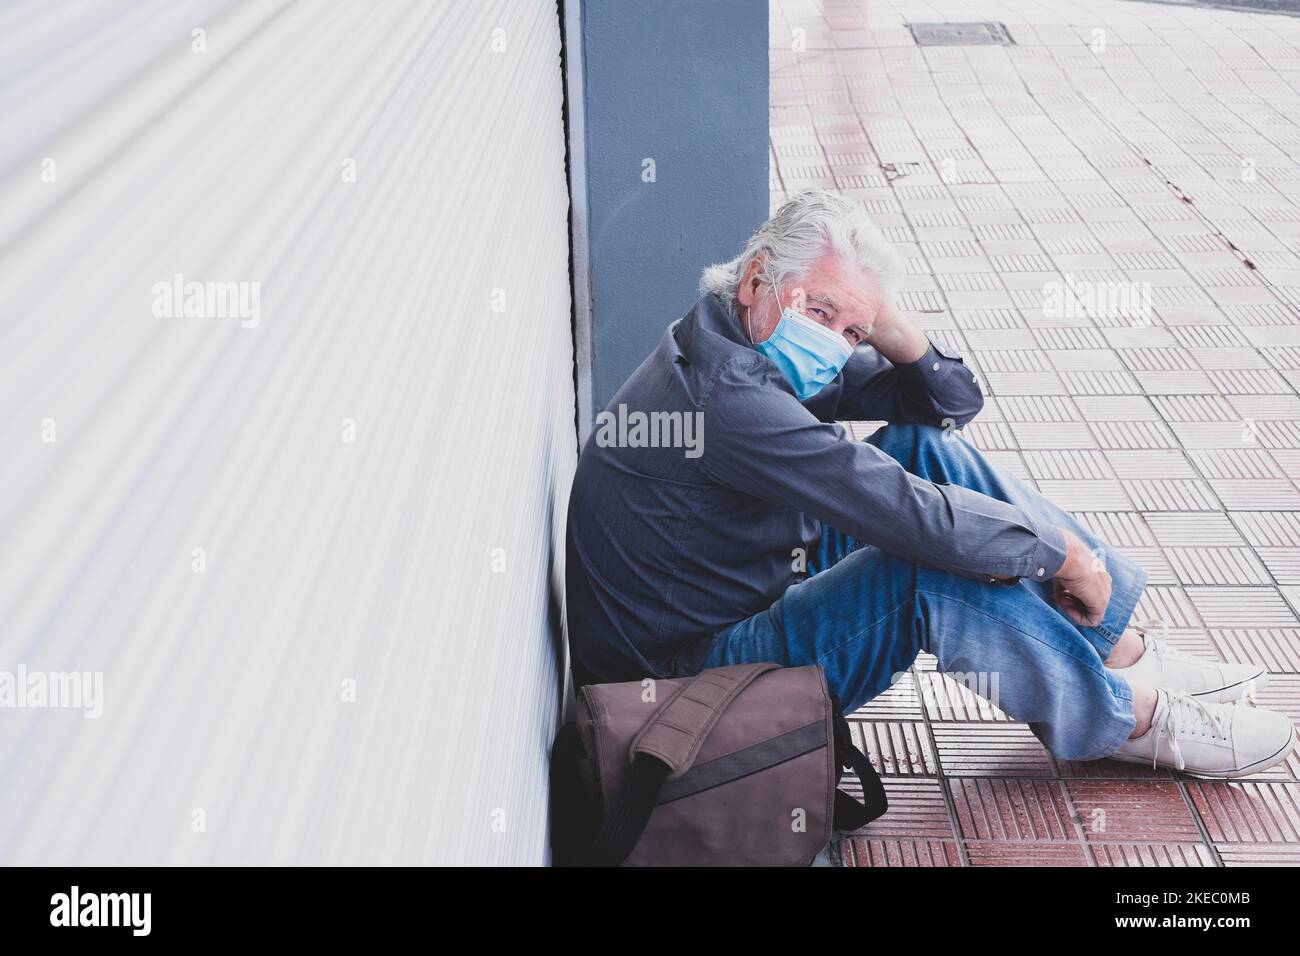 un vieil homme mature assis sur le sol après avoir perdu et fermé son magasin d'activités pour le confinement de quarantaine - retraité senior regardant la caméra portant un masque médical et chirurgical pour prévenir les maladies et covid-19 Banque D'Images